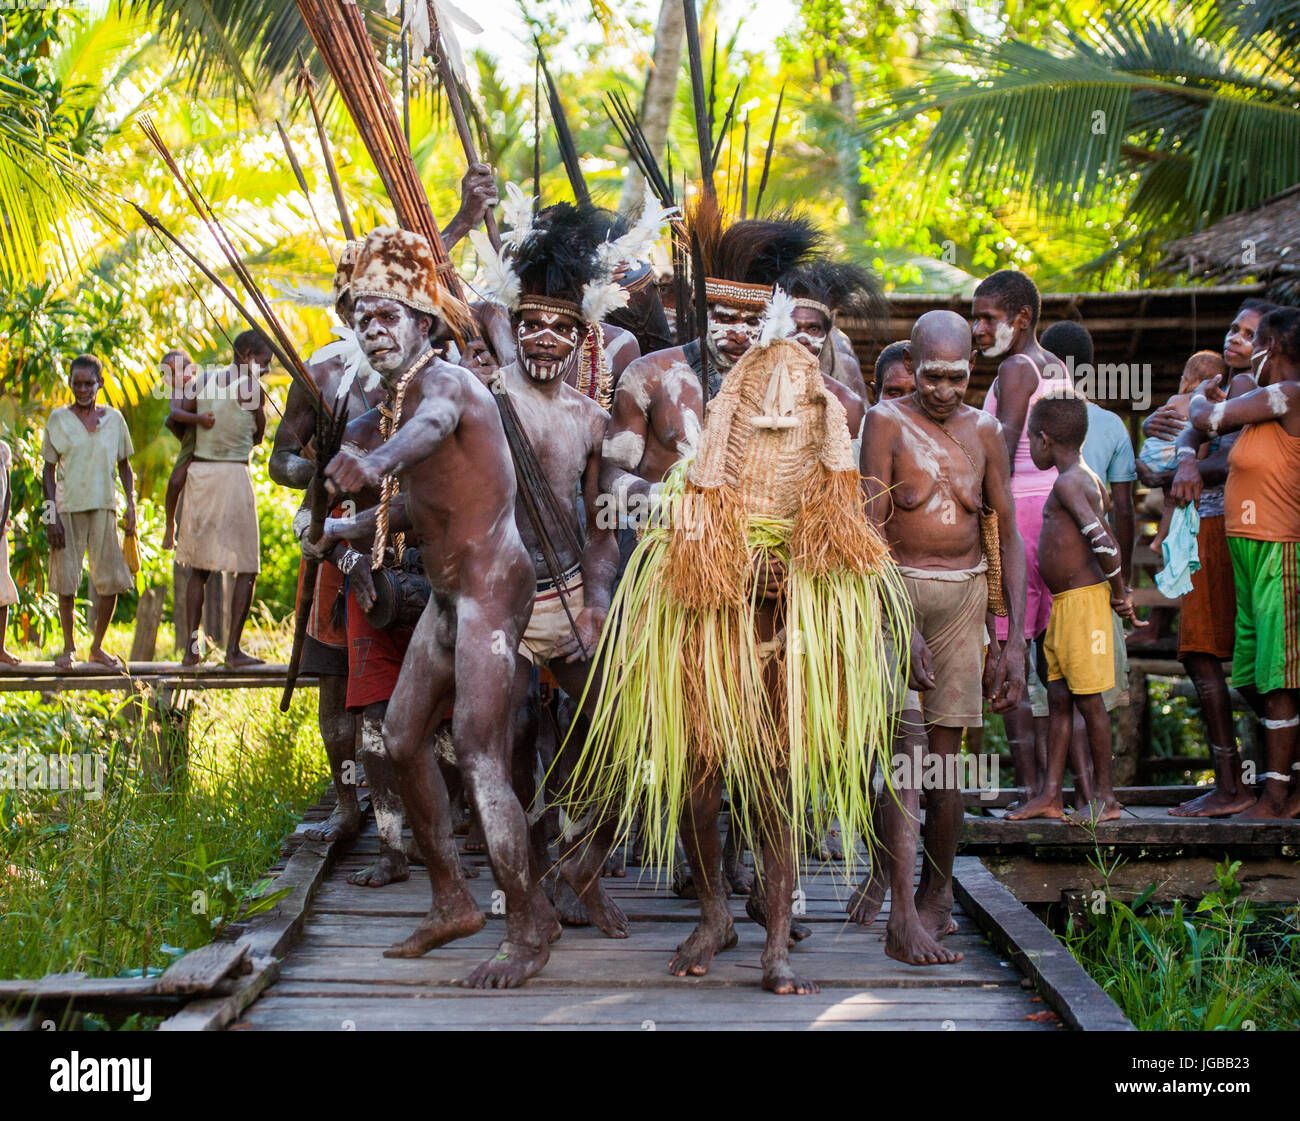 Indonesien, IRIAN JAYA, ASMAT Provinz, JOW Dorf - Juni 12: Asmat-Stammes-Krieger mit Pfeil und Bogen. Stockfoto